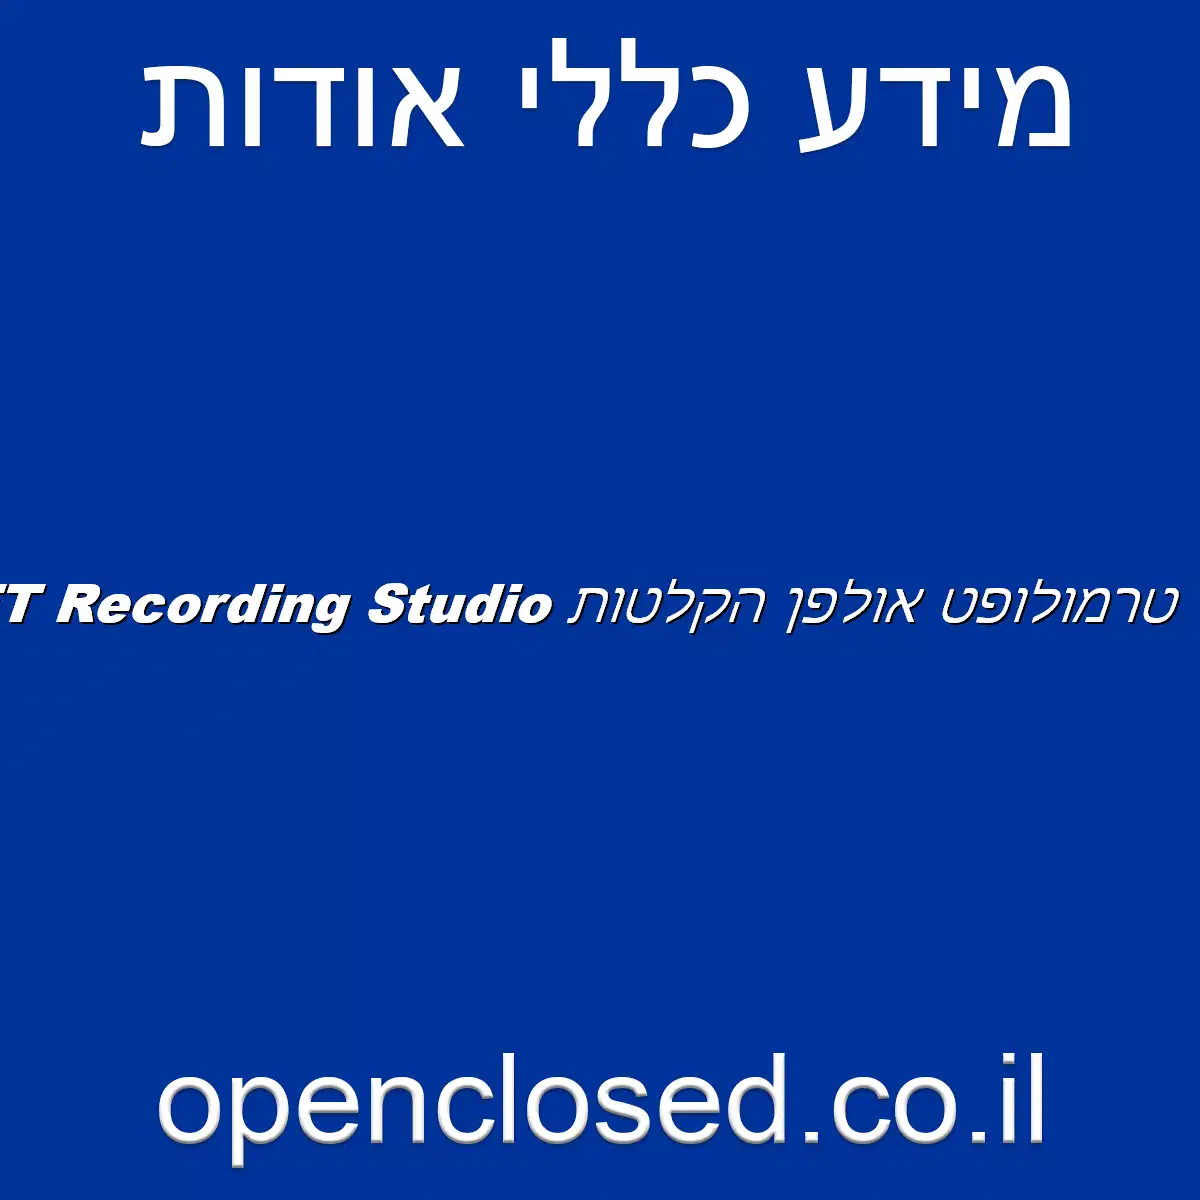 טרמולופט אולפן הקלטות TREMOLOFT Recording Studio